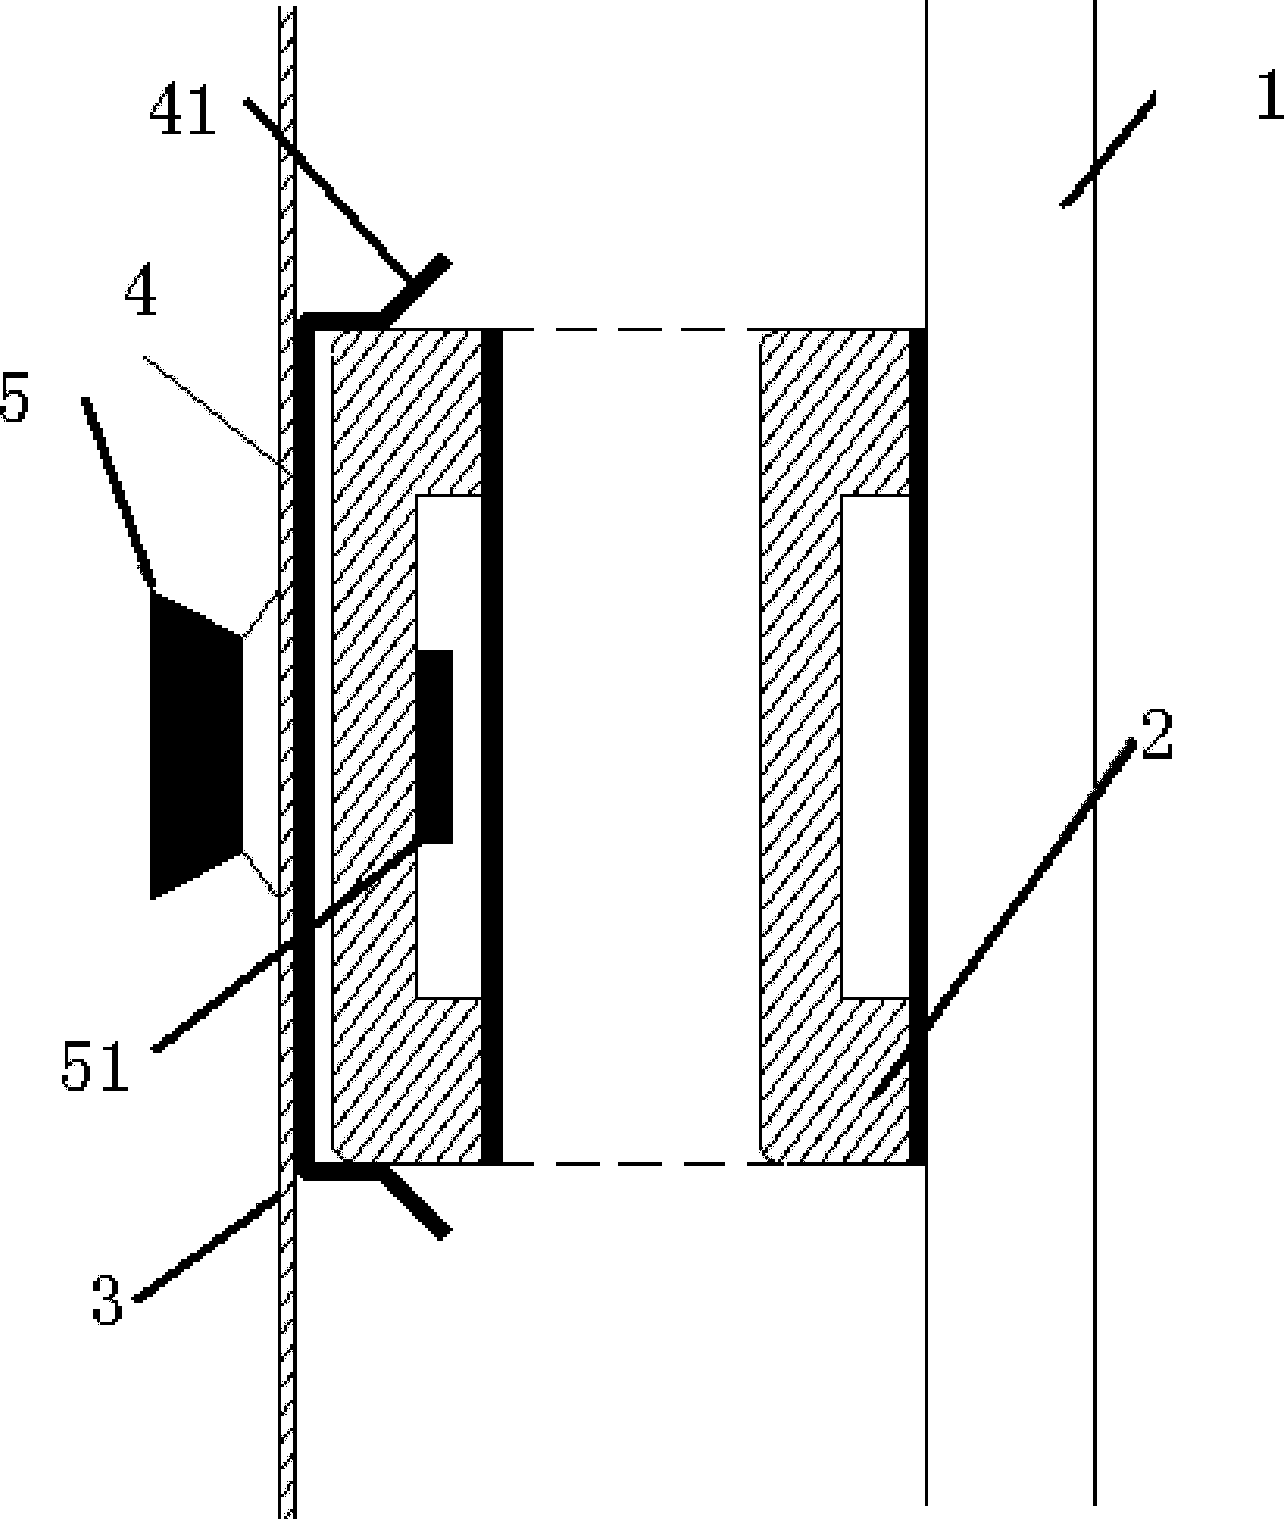 Switch cabinet door plank lifting mechanism